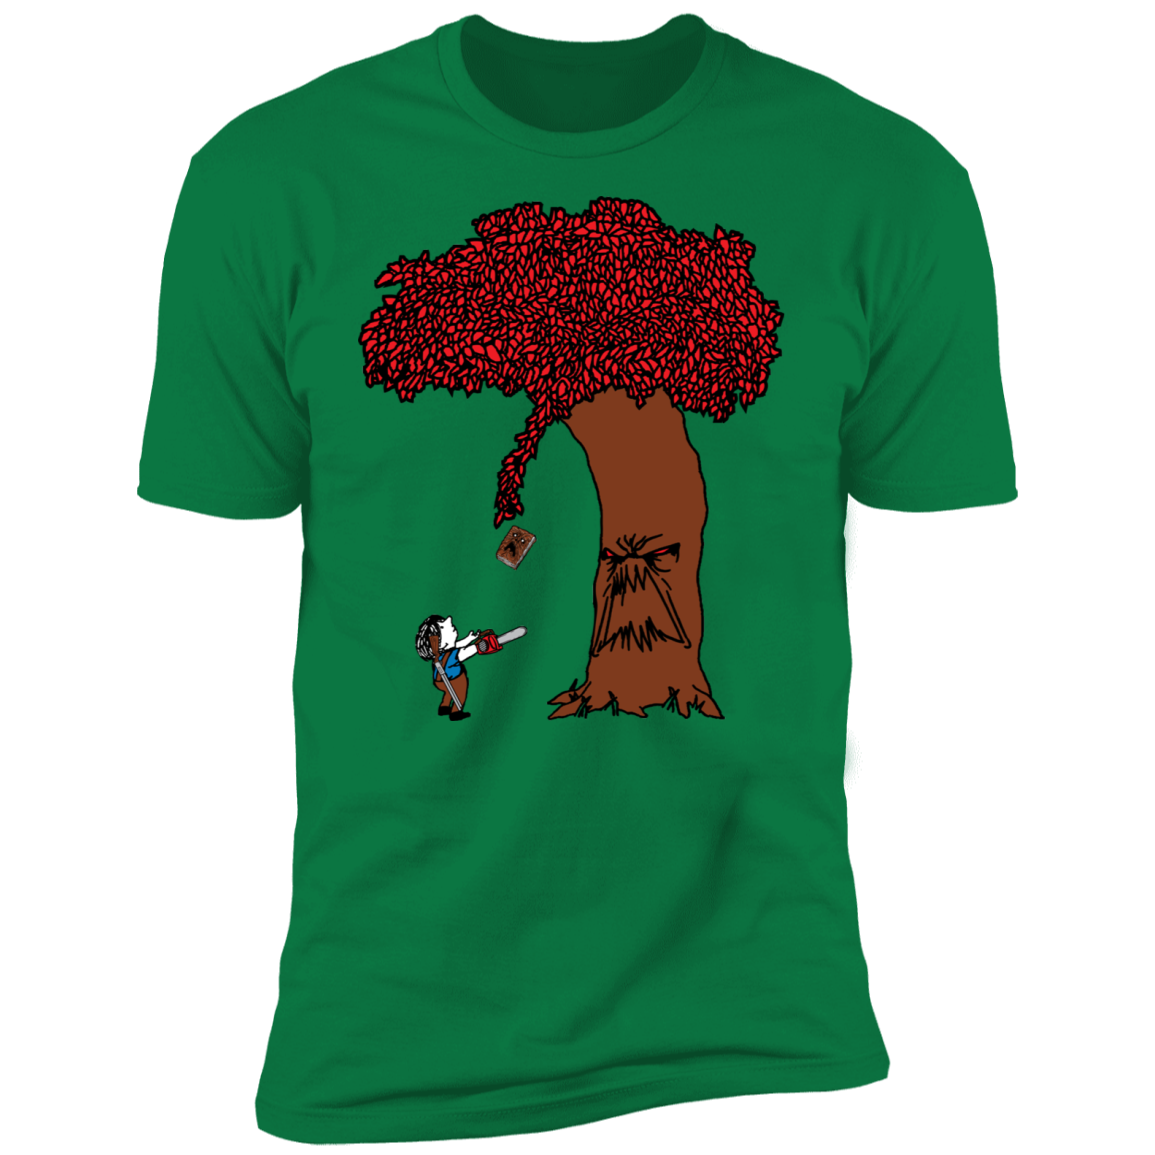 The Evil Tree Men's Premium T-Shirt